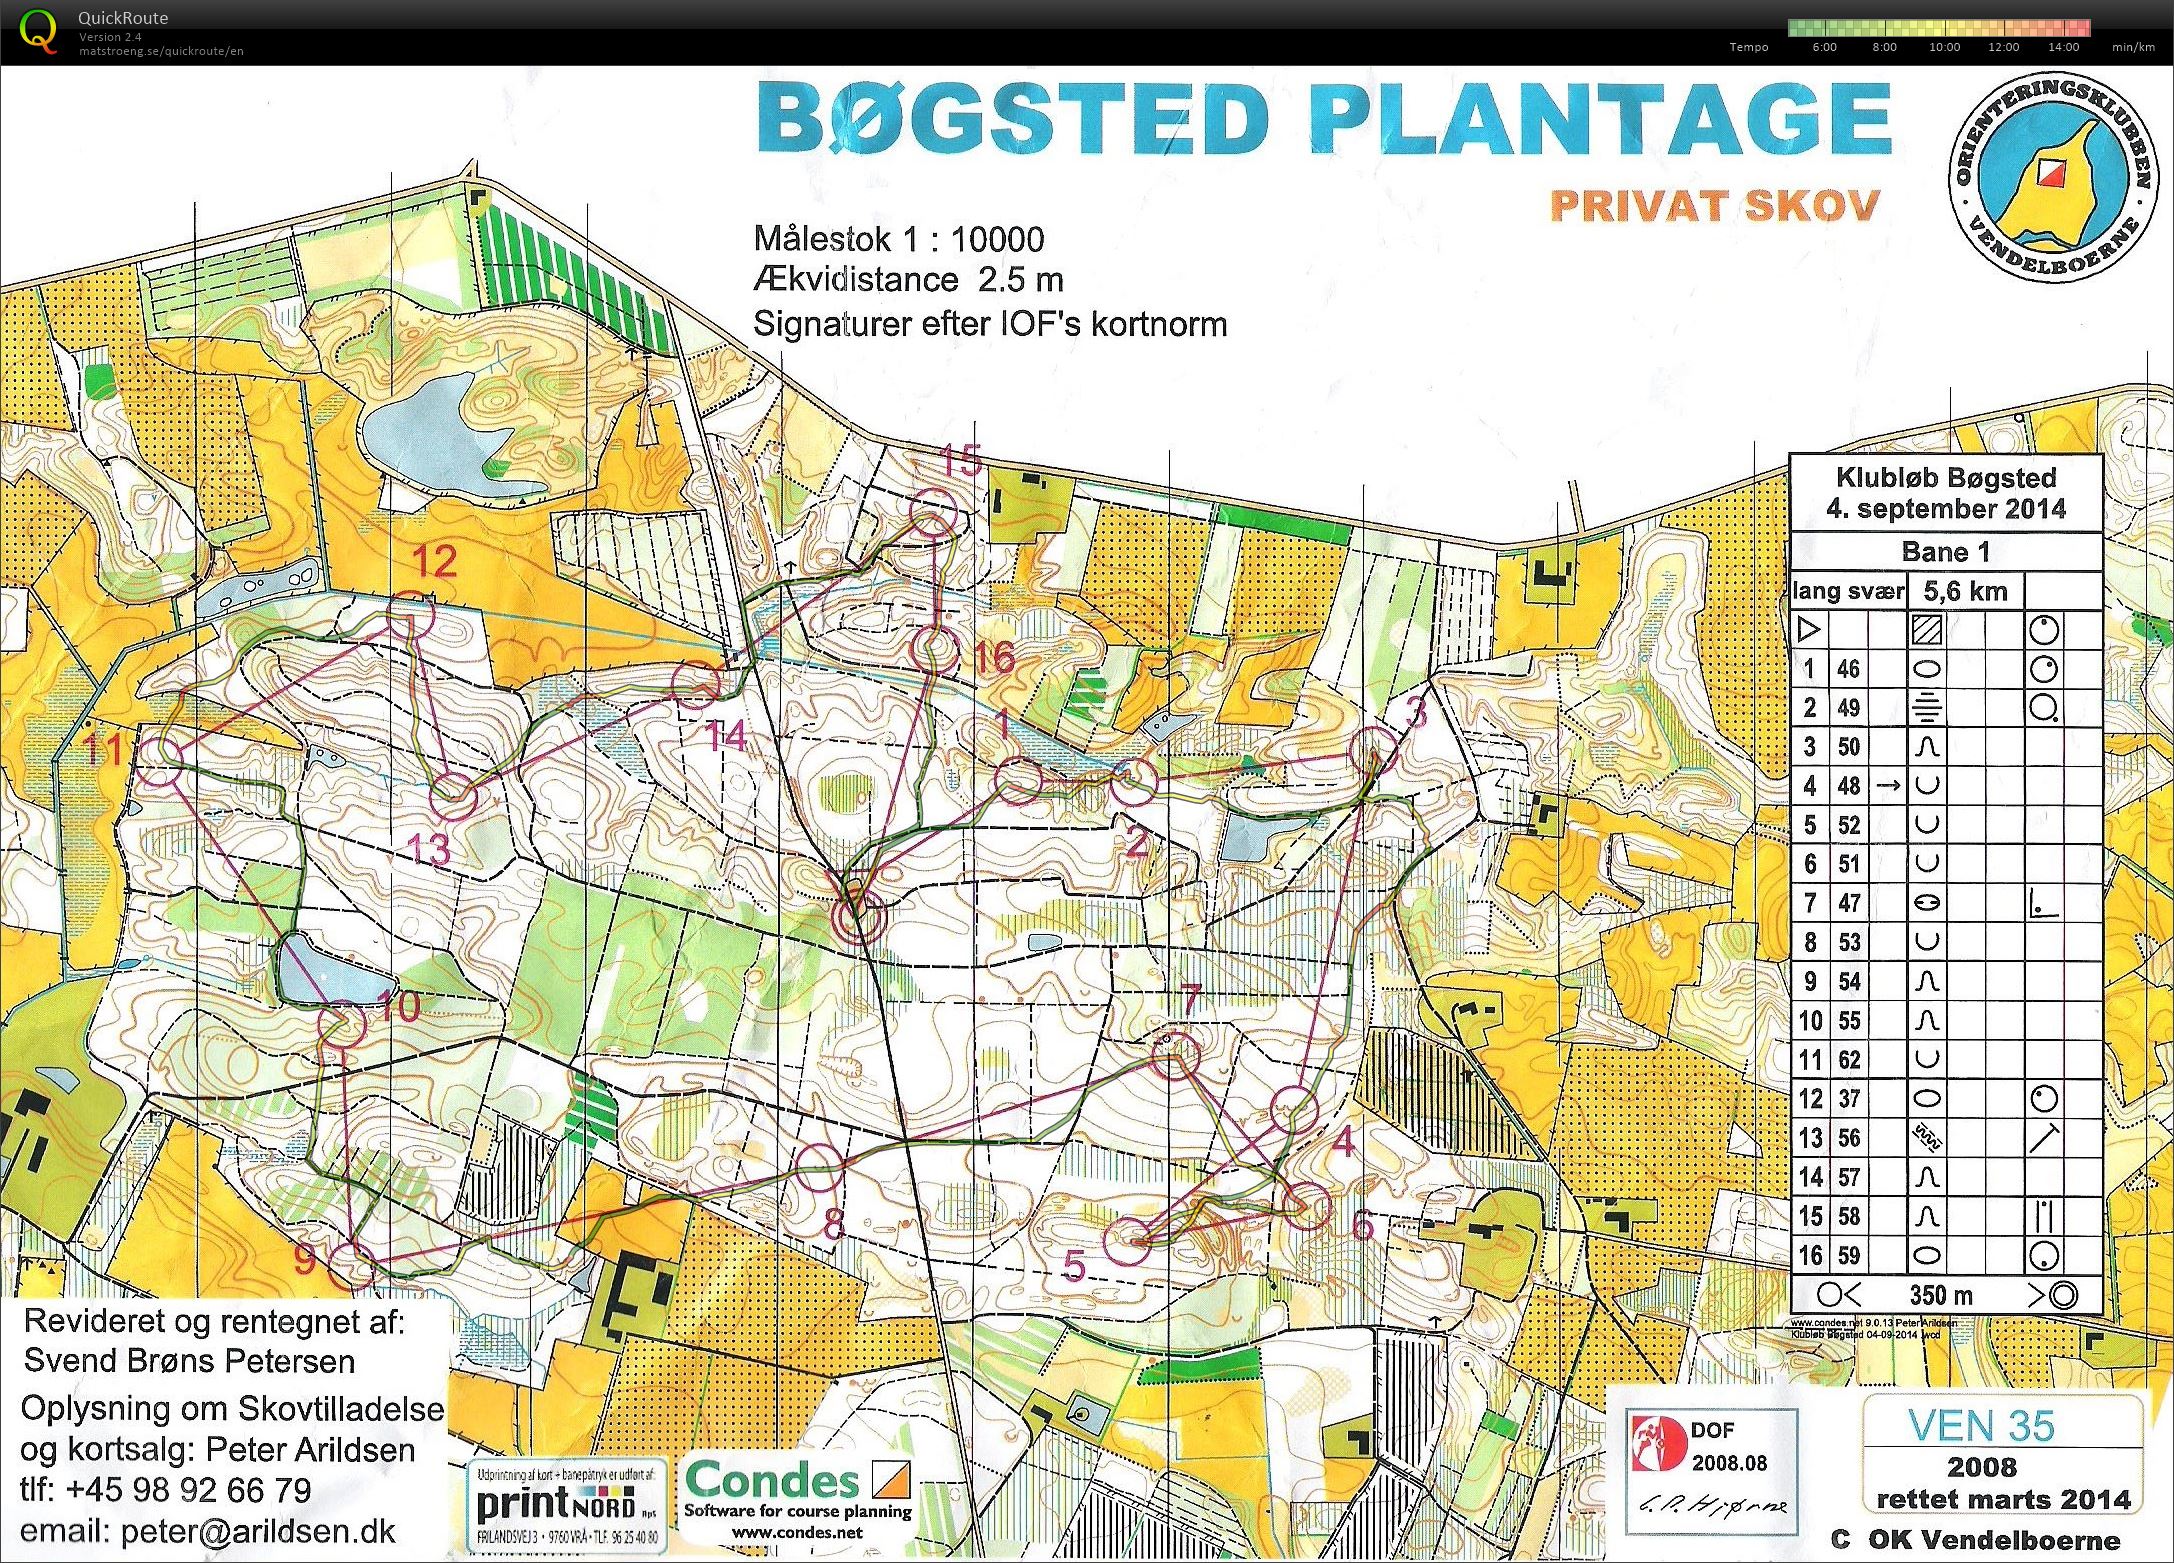 Bøgsted Plantage - Bane 1 (04/09/2014)